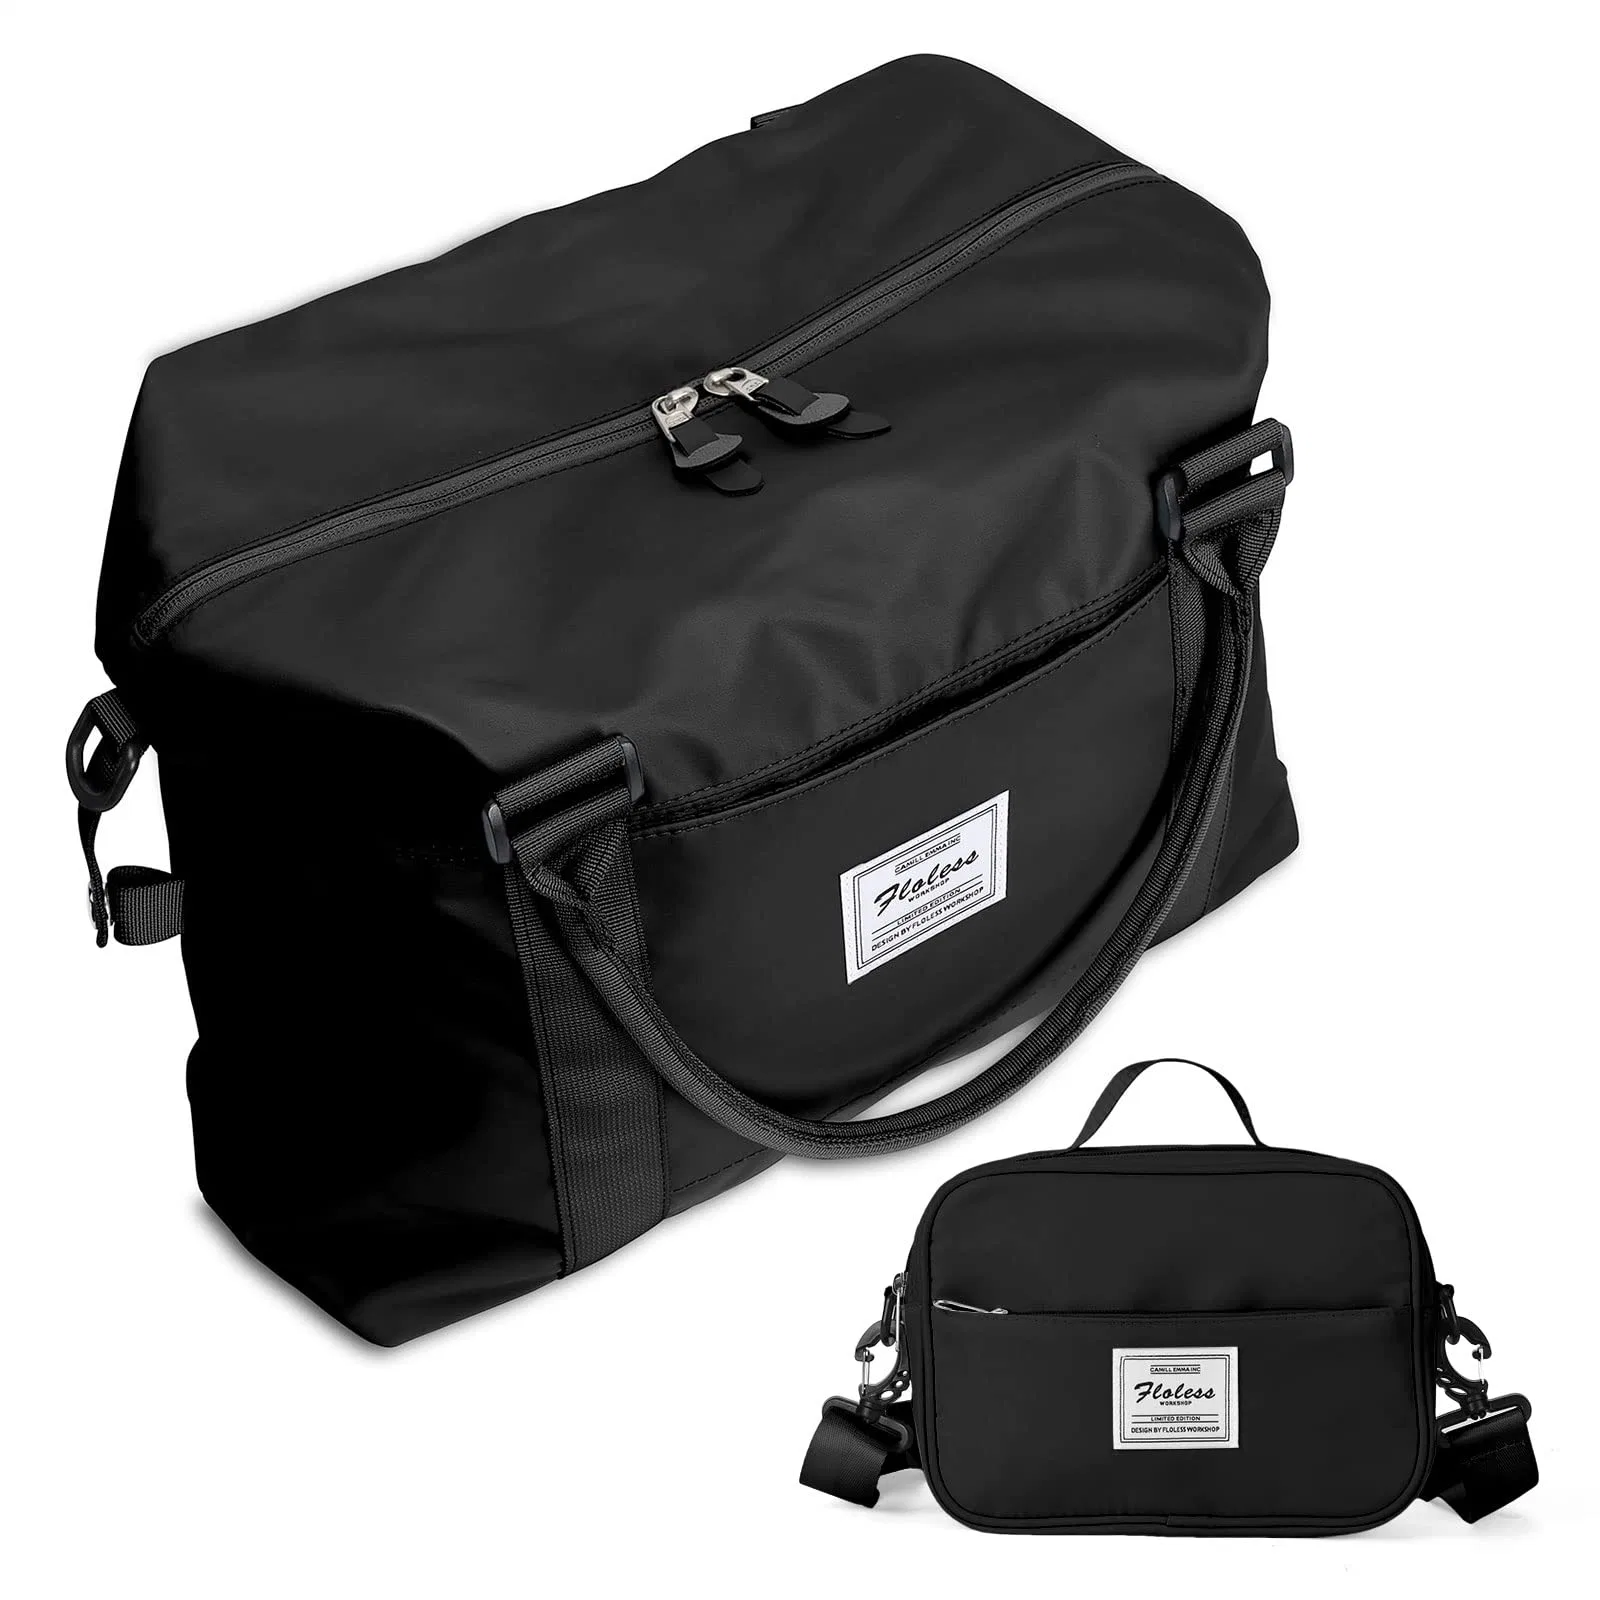 Fashion Traveling Travel Duffel Handbag Luggage Sport Travel Bag